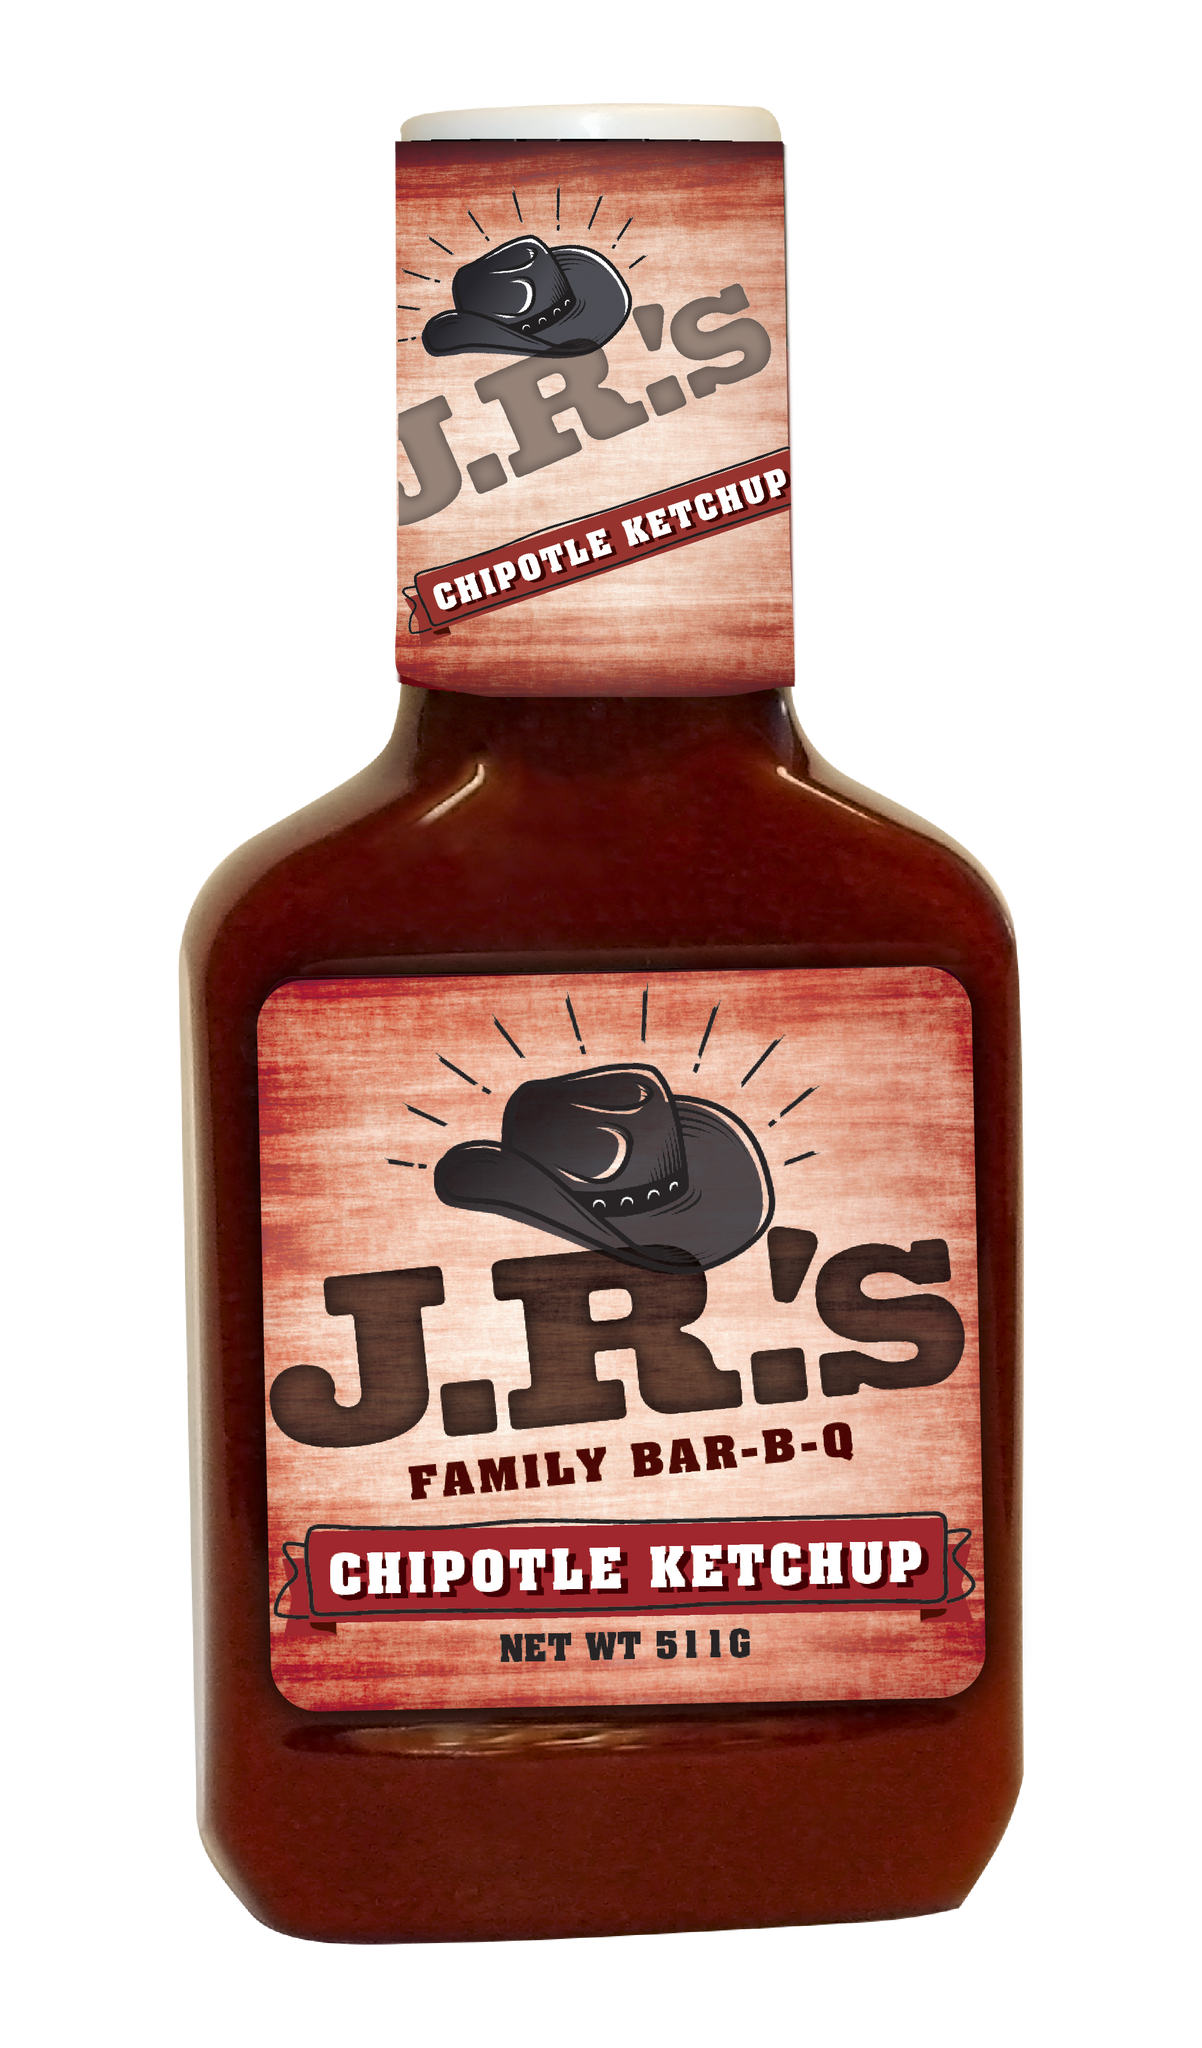 JR's Chipotle Ketchup